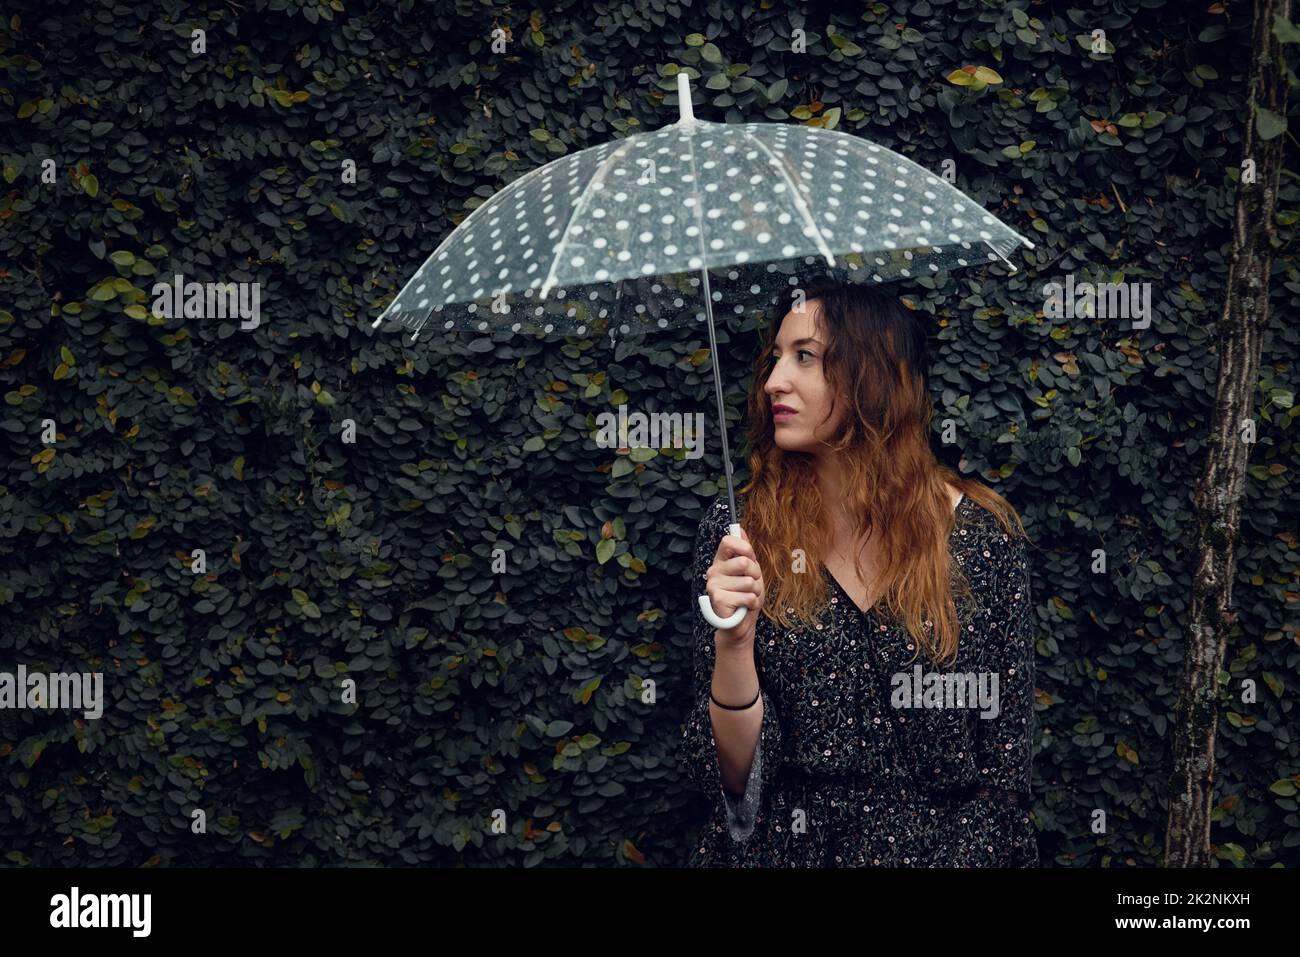 Aus Liebe zum Regen, aus Liebe zur Natur. Kurzer Schuss einer schönen jungen Frau, die einen Regenschirm draußen hält. Stockfoto